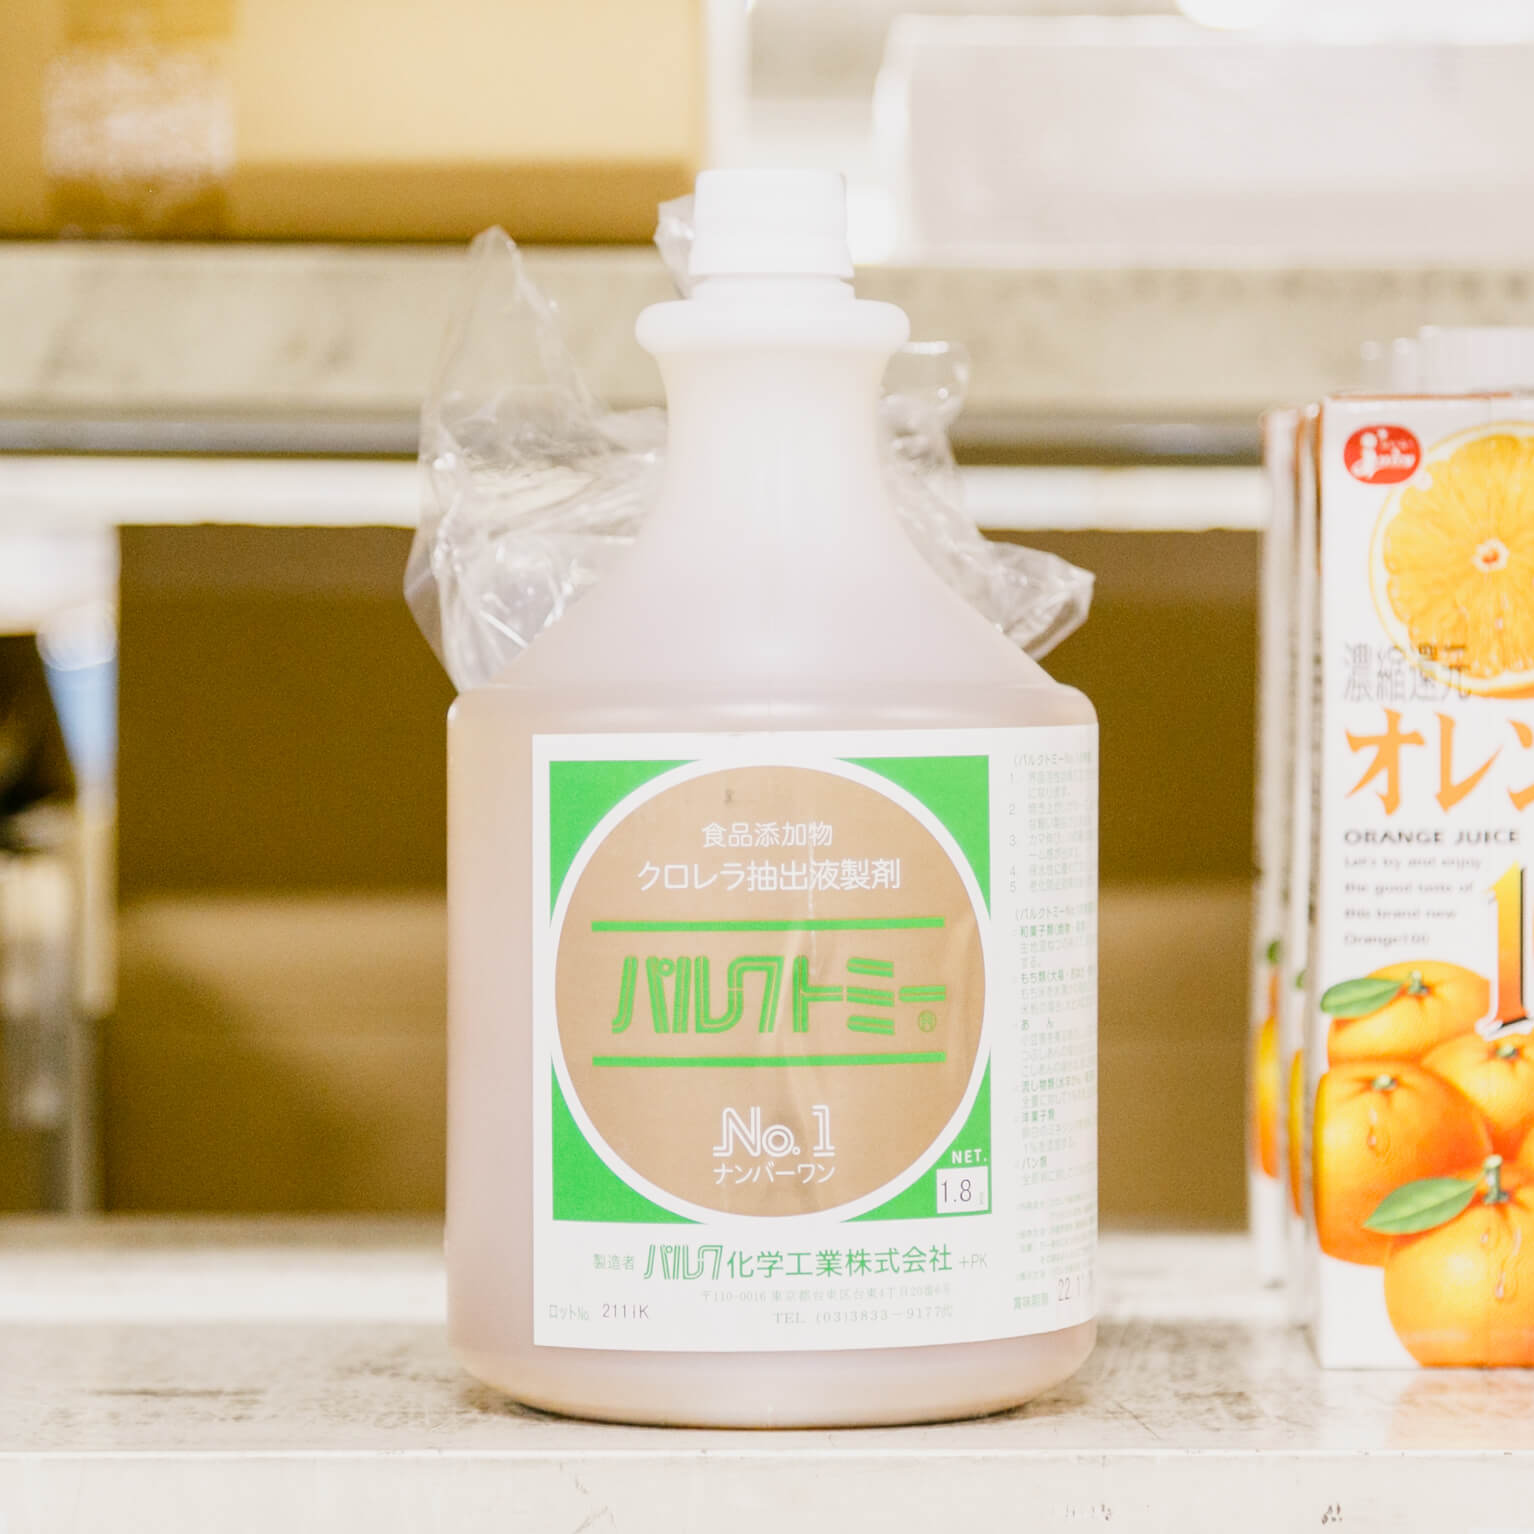 パルクトミー No.1 製菓・製パン用改良剤 1.8